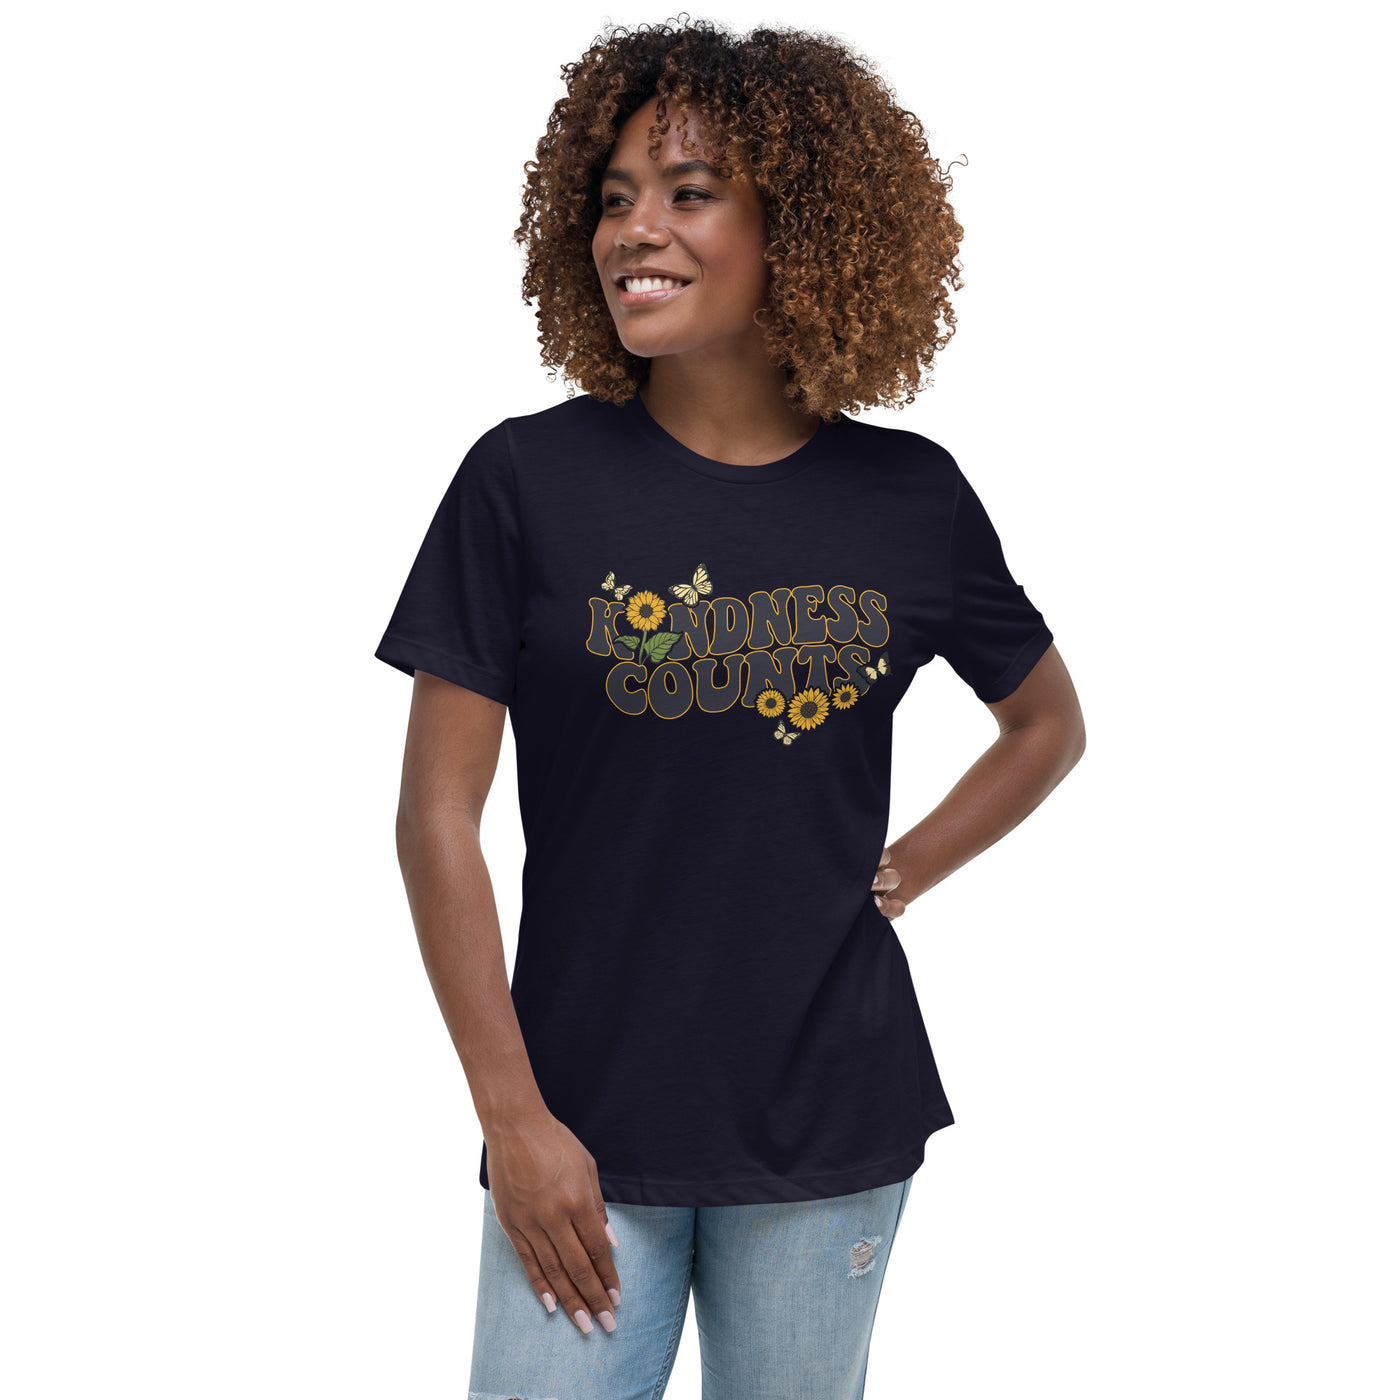 "Güte zählt" das entspannte Frauen-T-Shirt